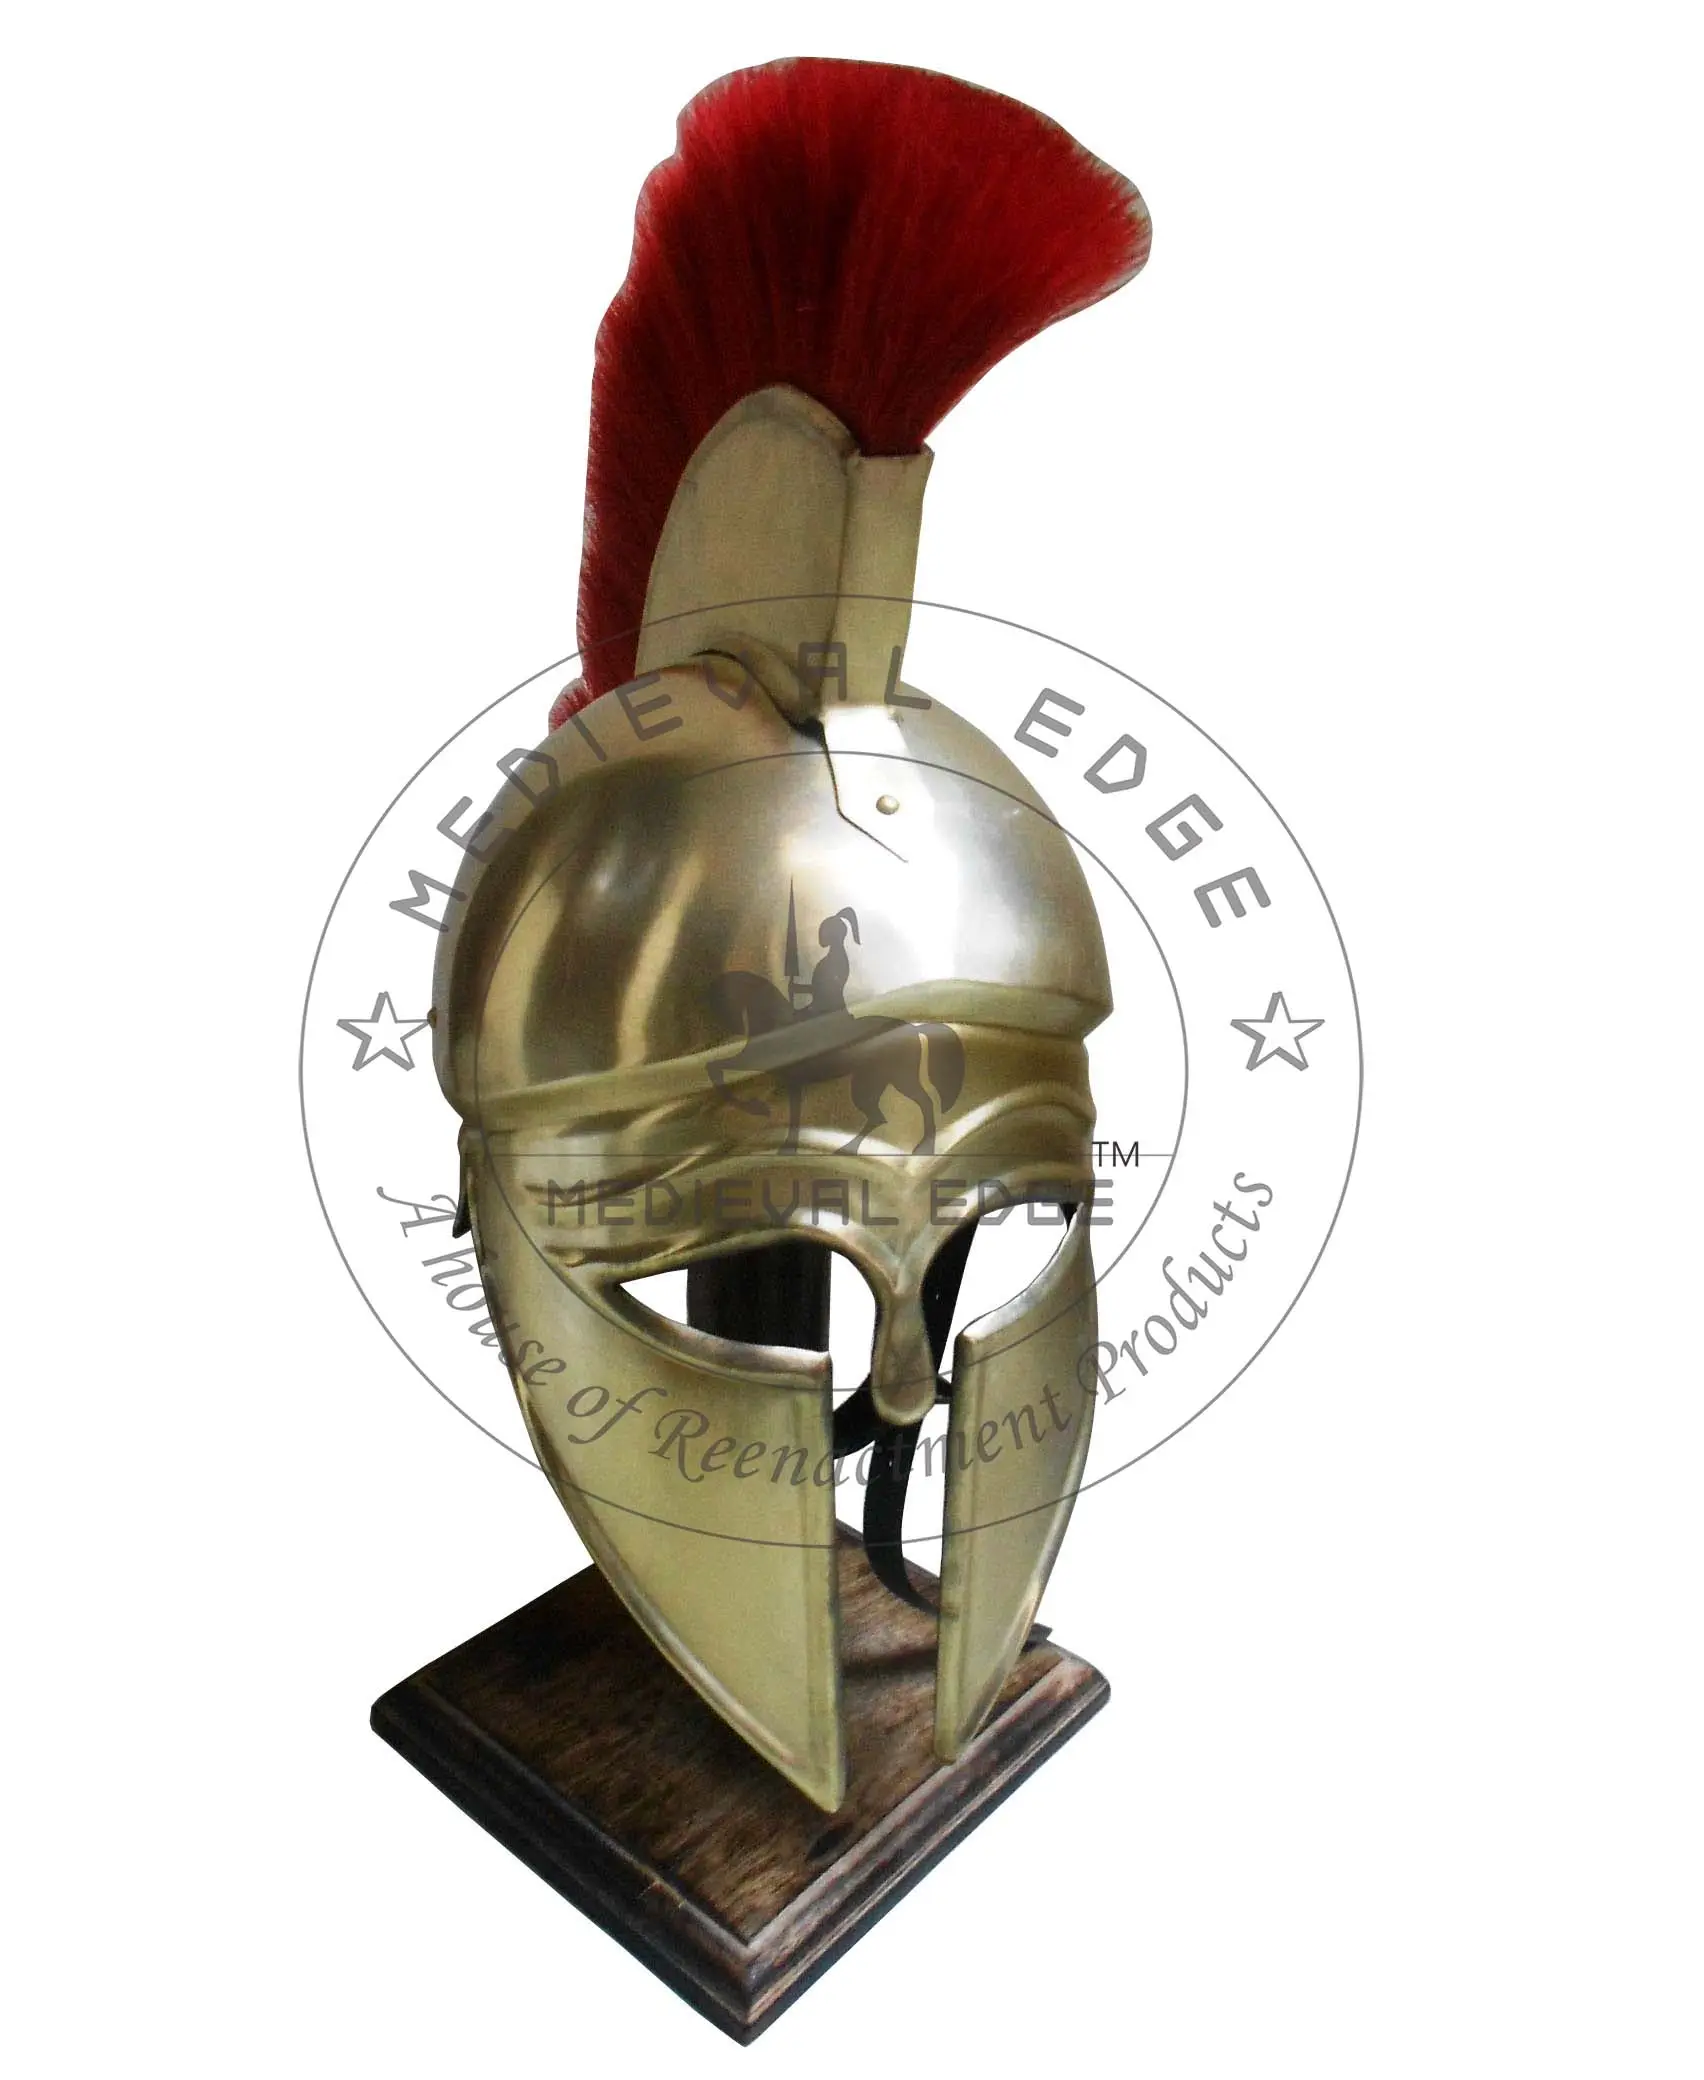 저렴한 가격으로 예술 또는 수집품에 가장 적합한 붉은 깃털로 황동 그리스 코린티아 헬멧을 구입하십시오.